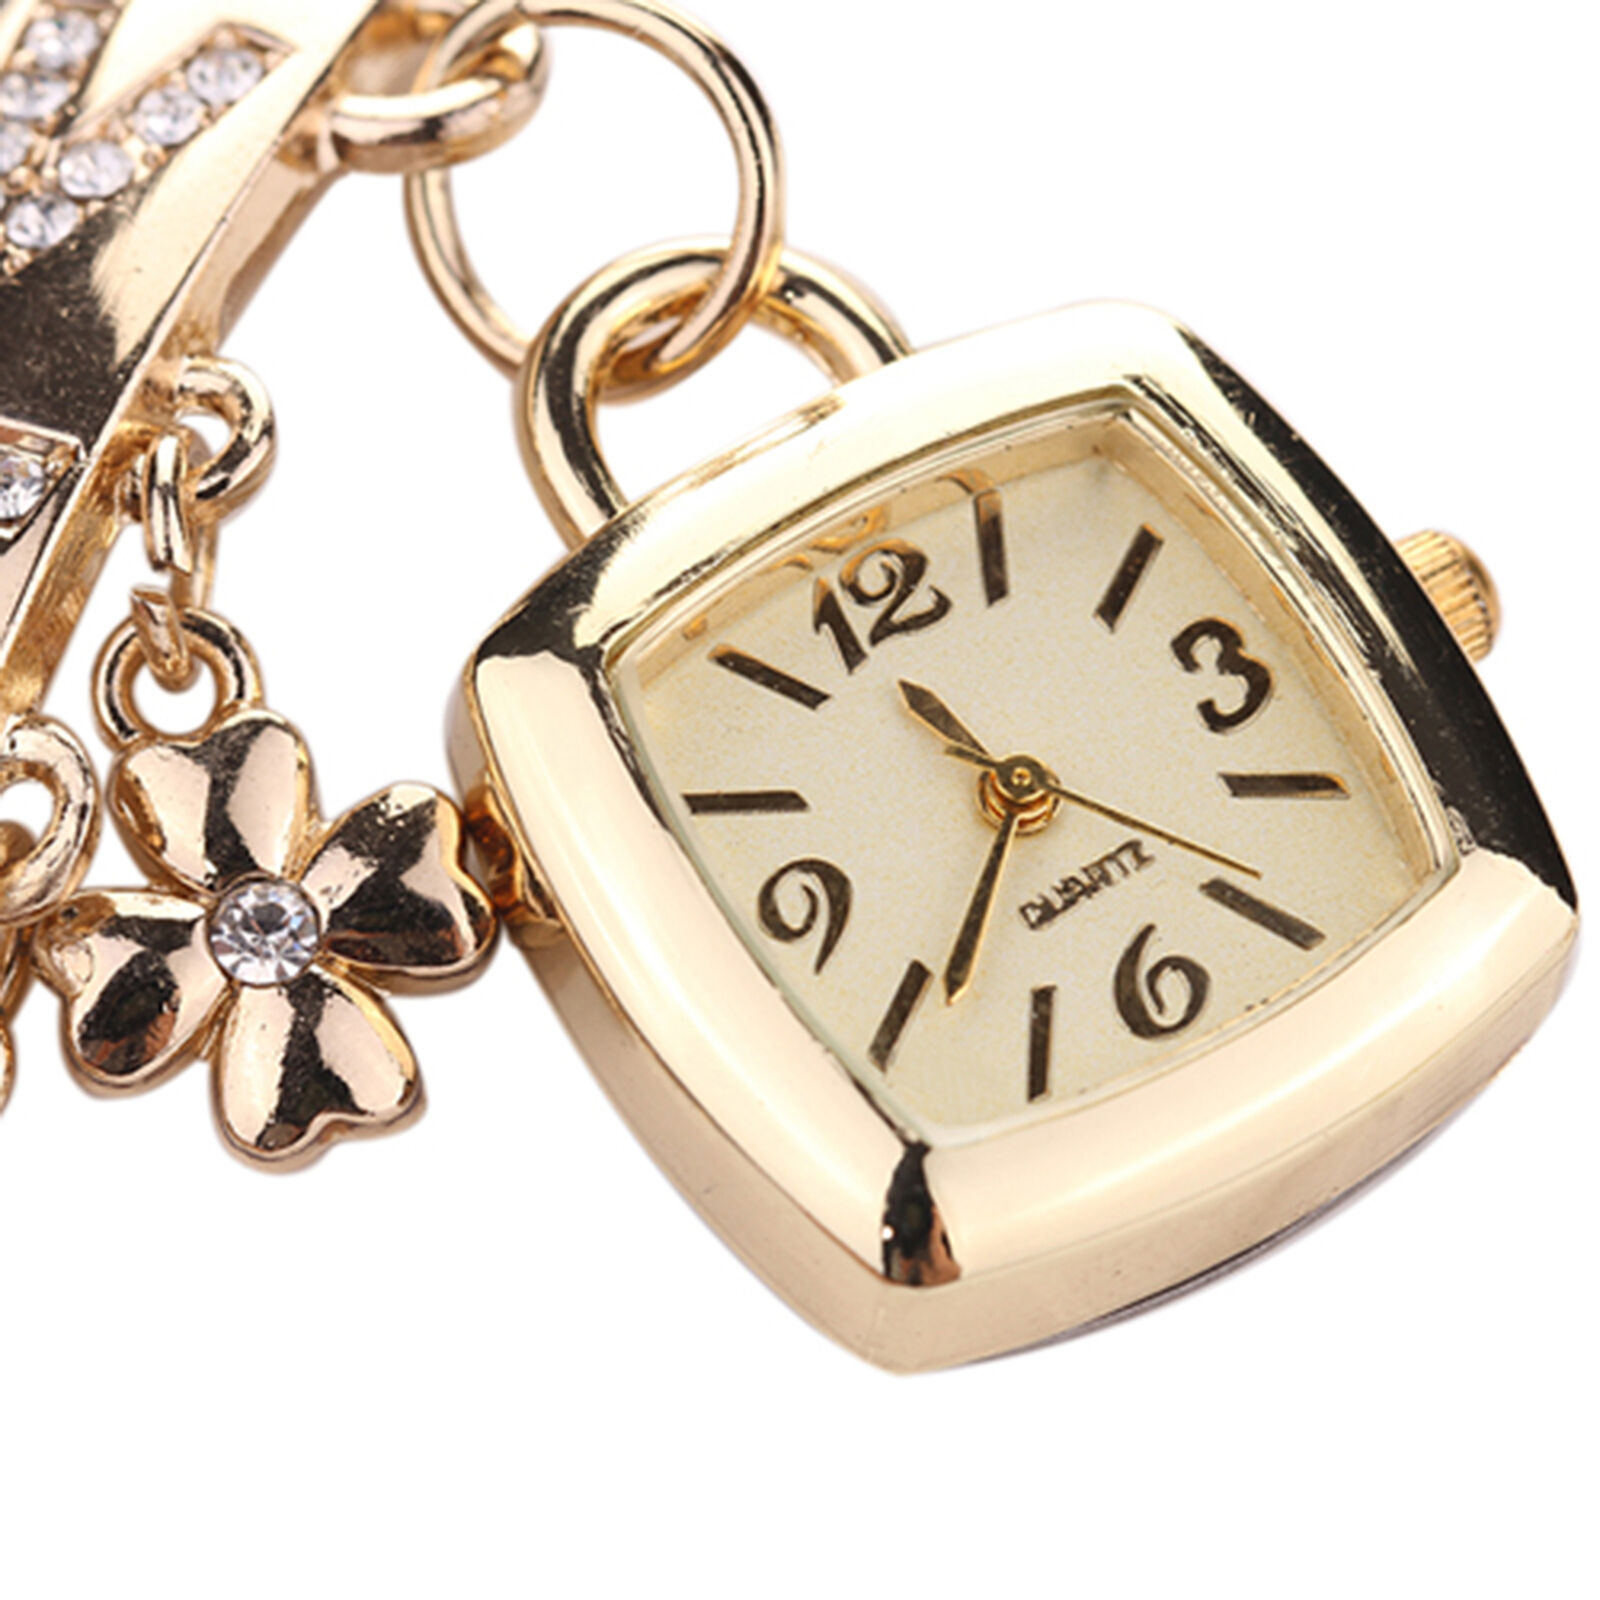 Jewelry Wristwatch Wear-resistant Shiny Surface Stylish Quartz Bracelet Watch Unbranded - фотография #3